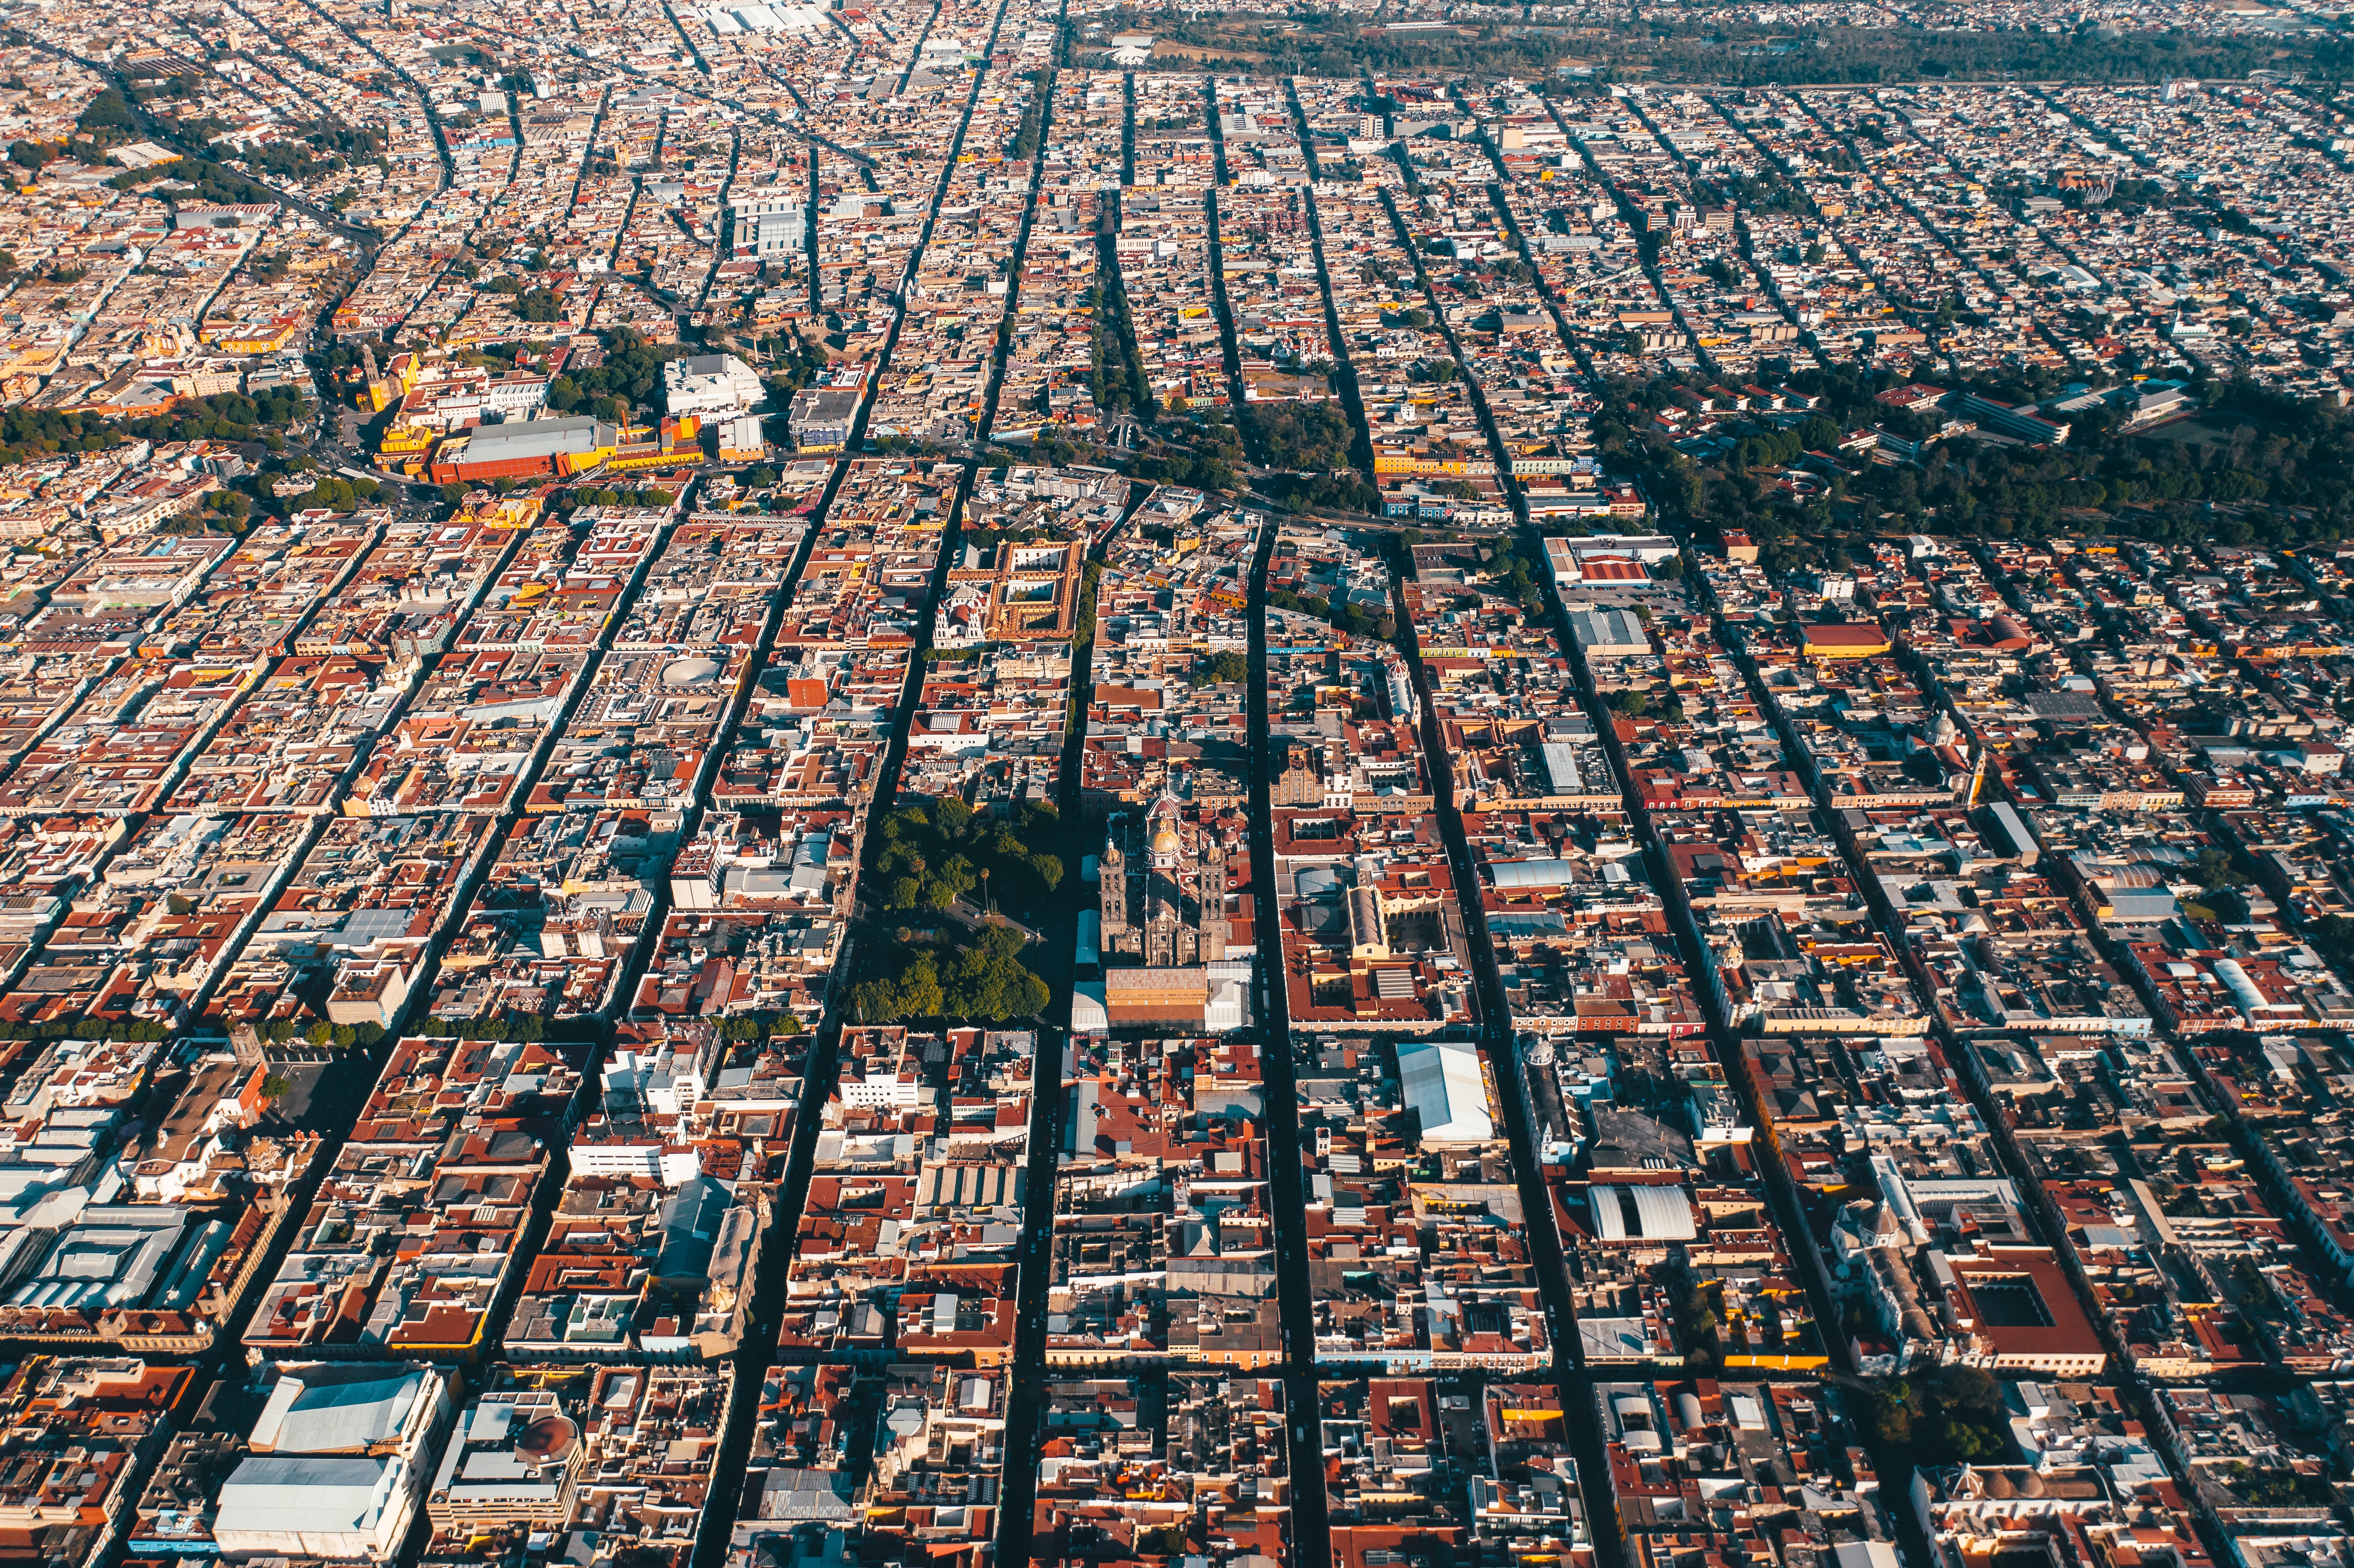 Vista aérea de una localidad urbana